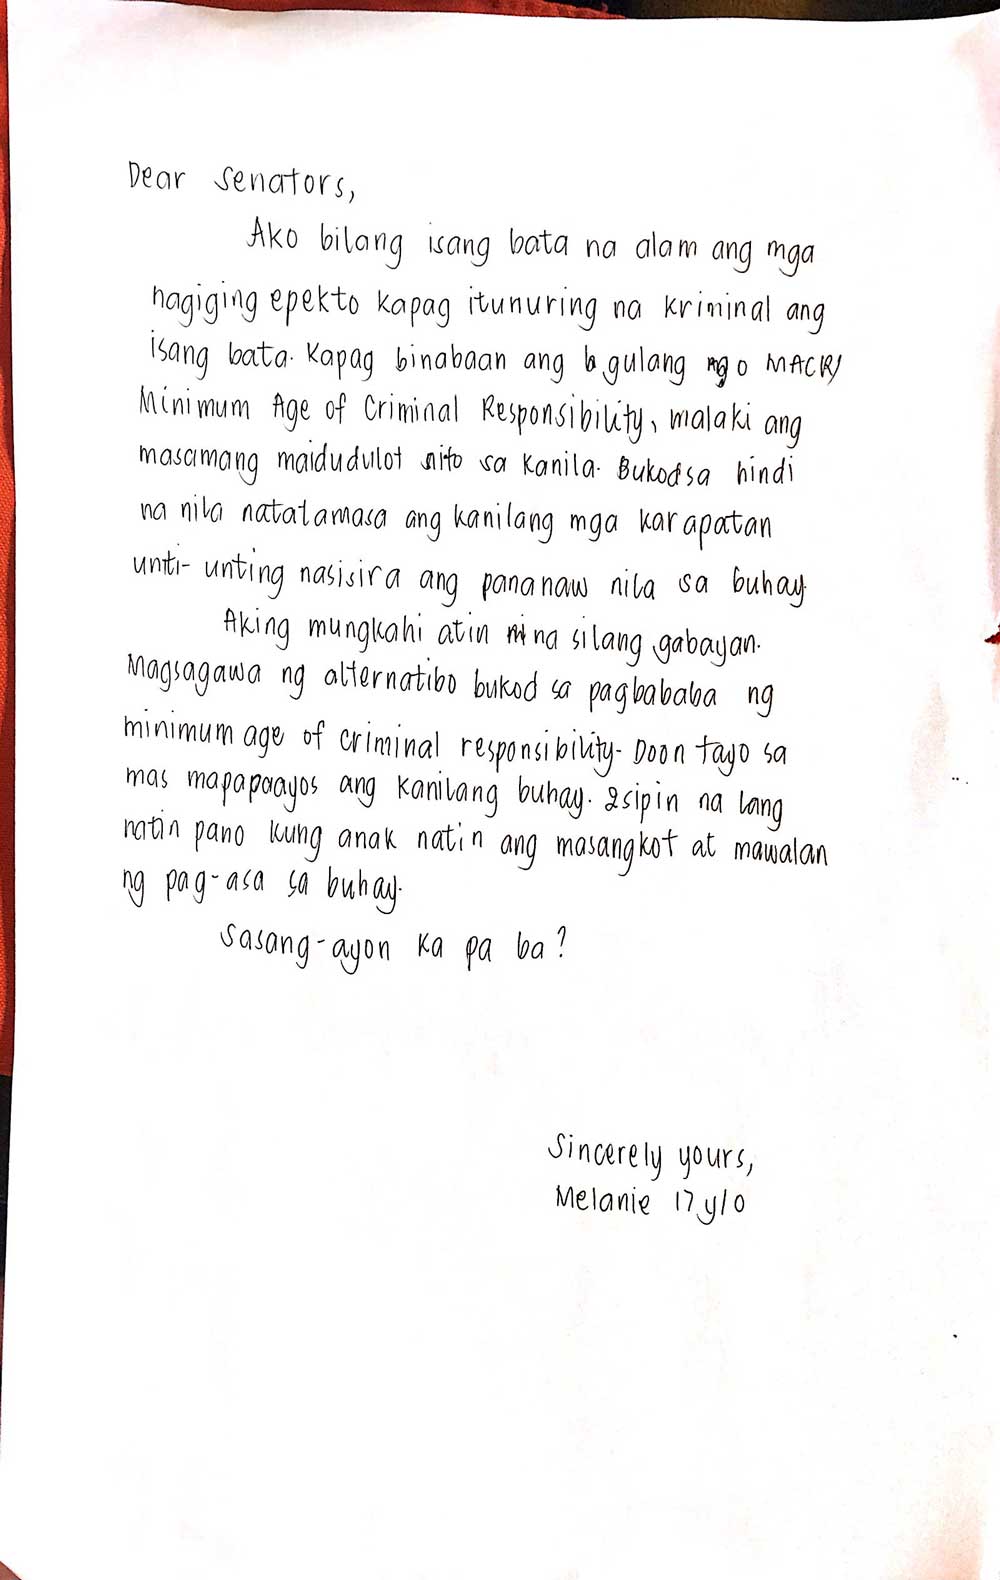 Letter to Senators from Melanie, 17